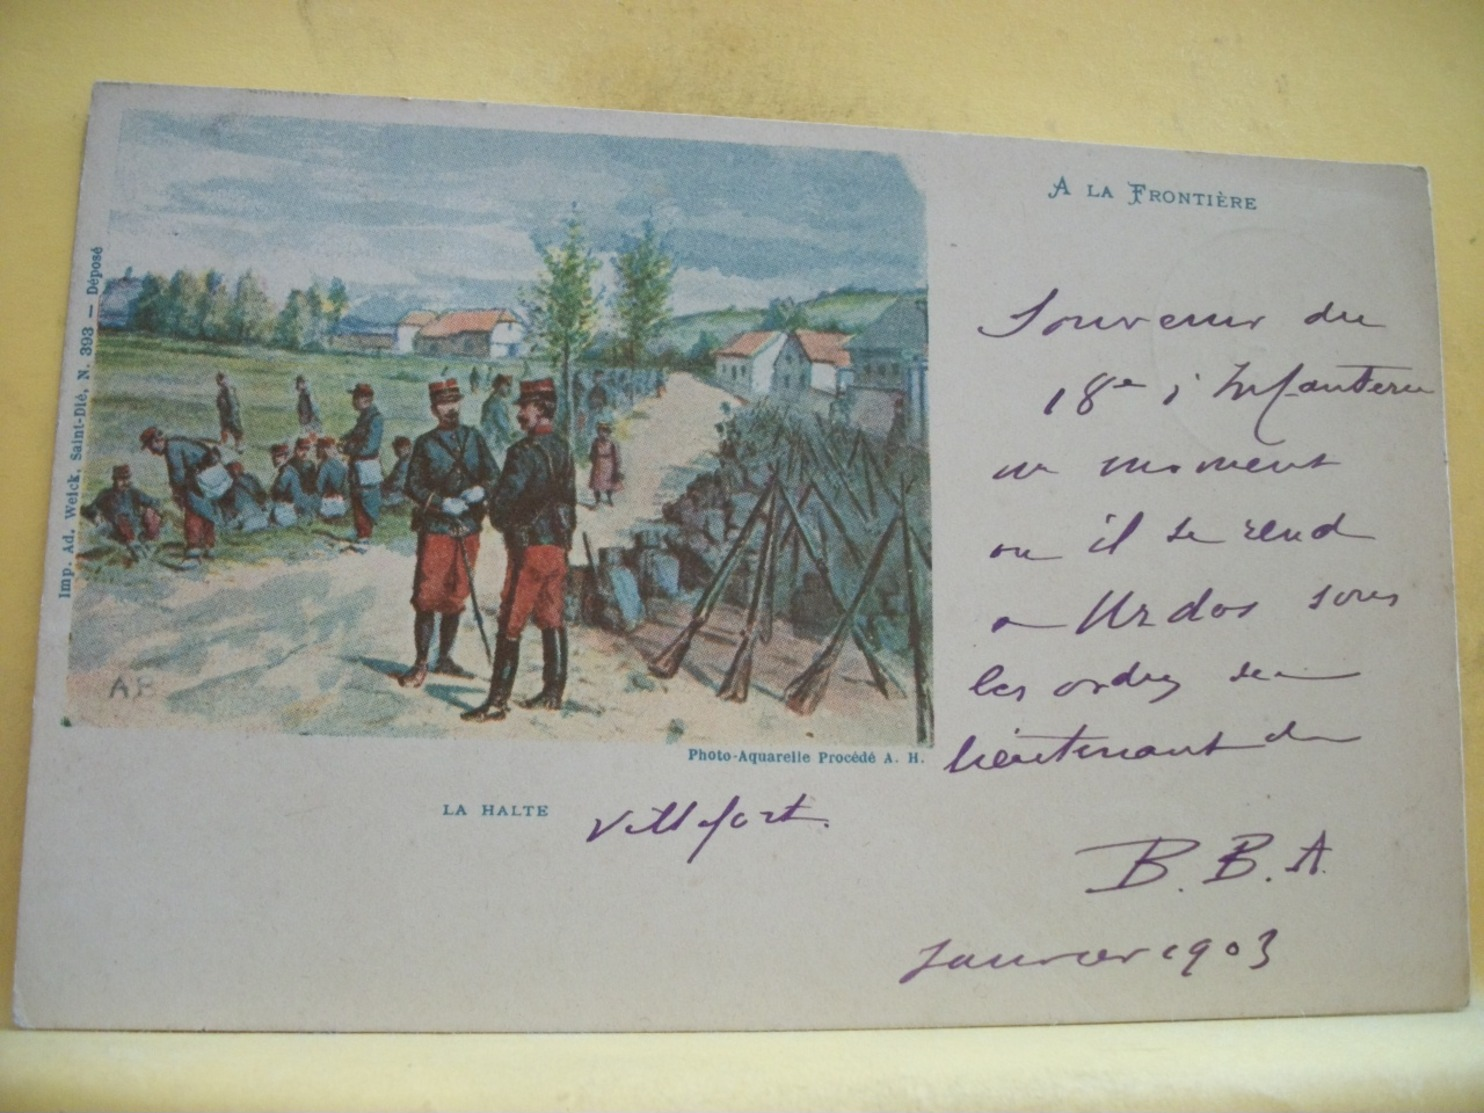 L10 9661 CPA 1903 - MILITARIAT - A LA FRONTIERE. LA HALTE - PHOTO AQUARELLE PROCEDE A. H. - ANIMATION - Manoeuvres